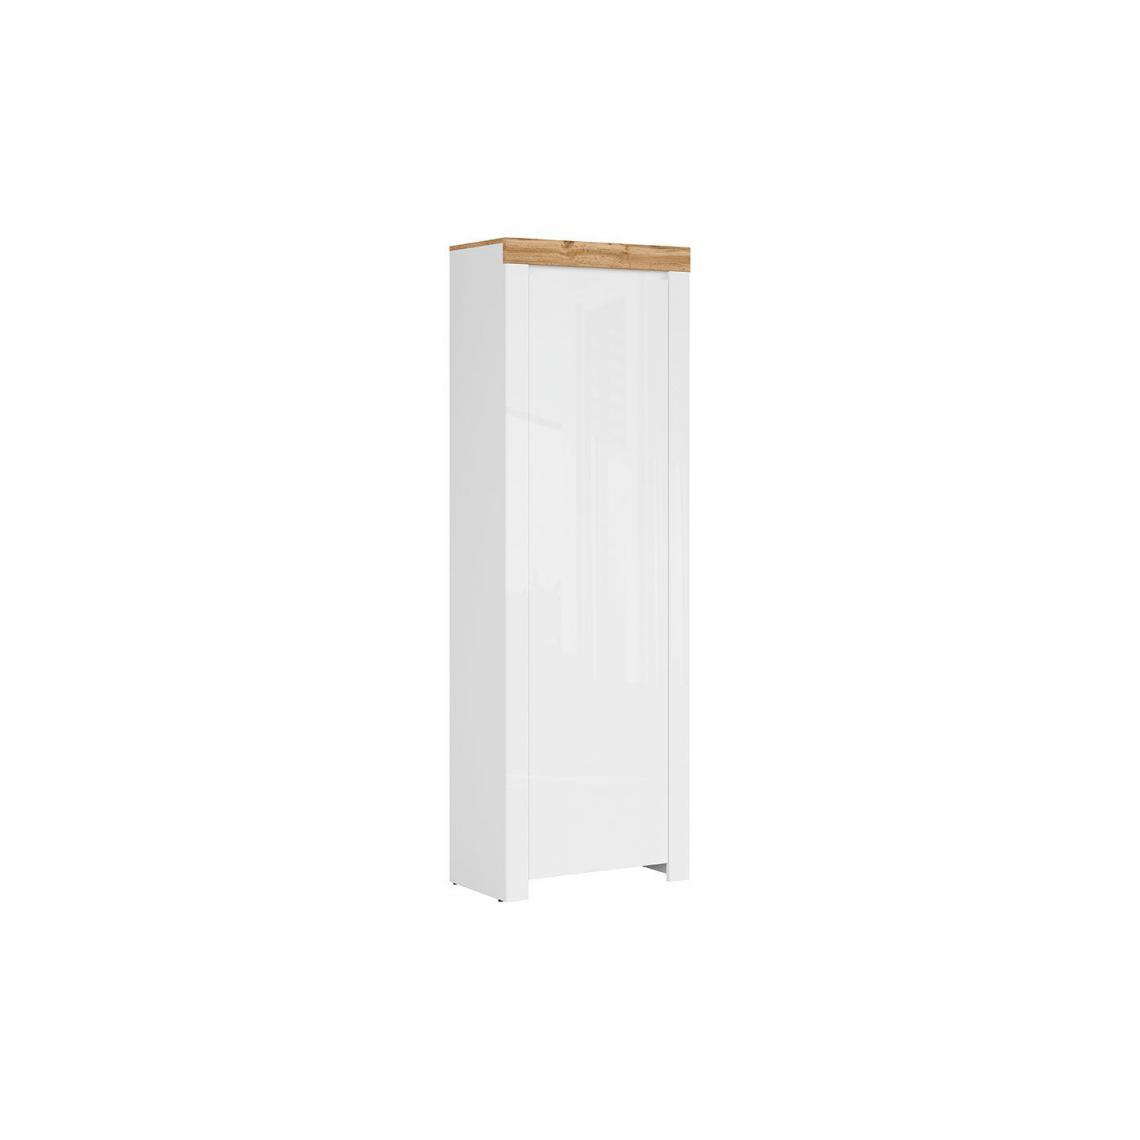 Hucoco - HOLTENSO - Armoire simple style scandinave chambre/couloir - 203.5x68.5x37 - 1 porte - Meuble de chambre à coucher - Blanc - Armoire